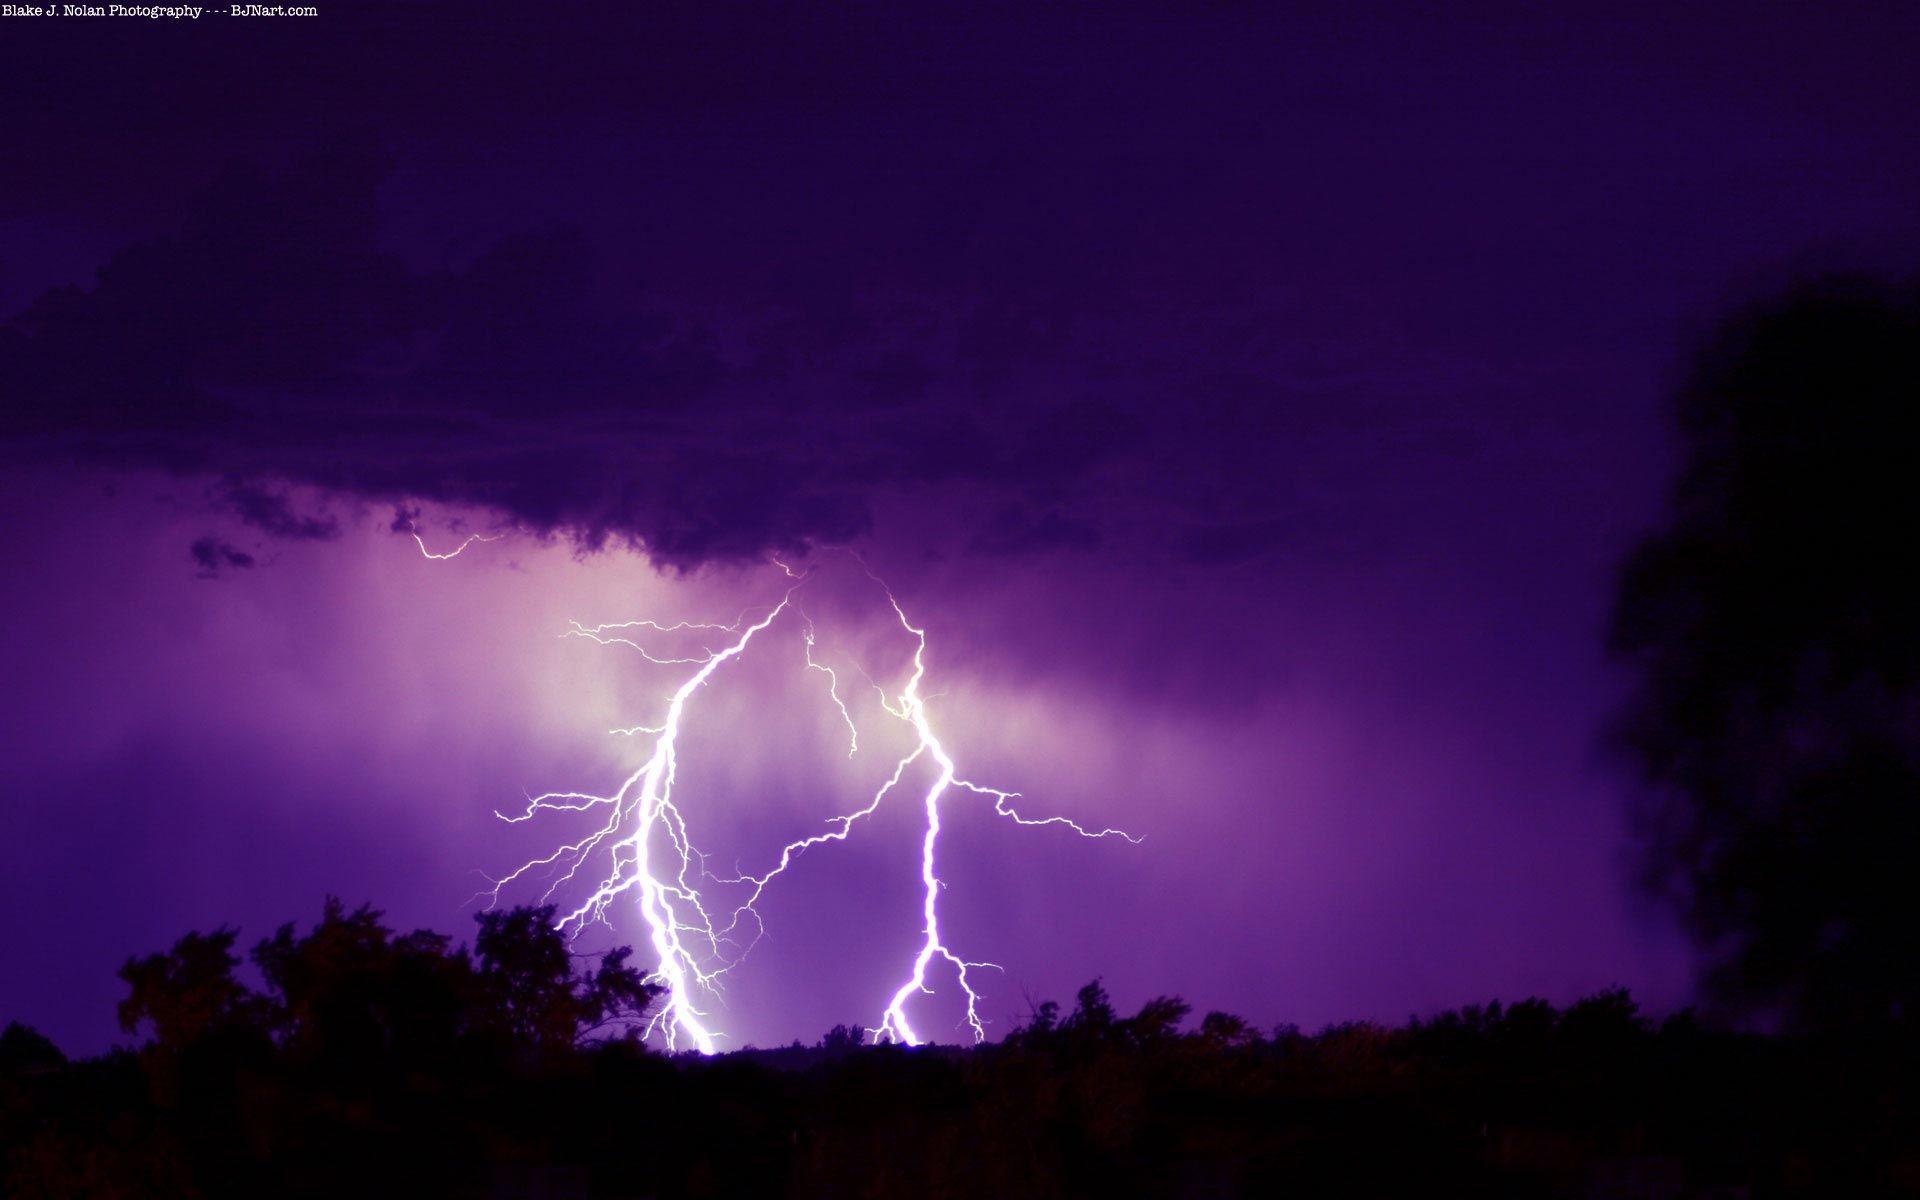 500 Lightning Images  Download Free Images on Unsplash